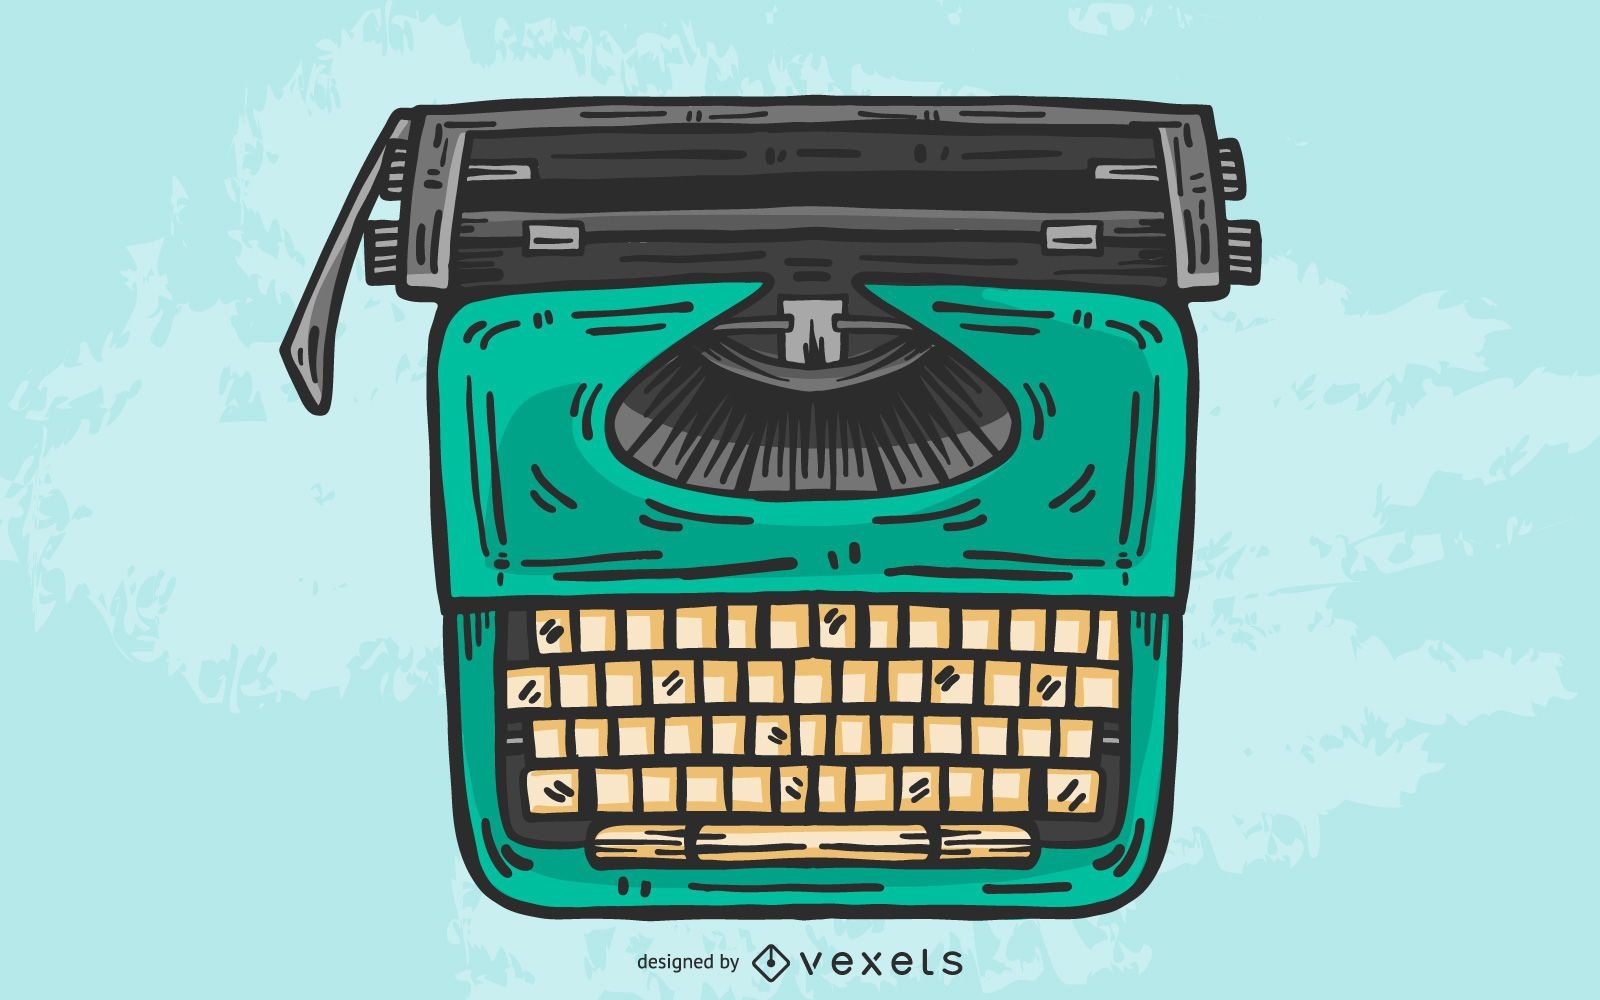 Projeto ilustrado de máquina de escrever